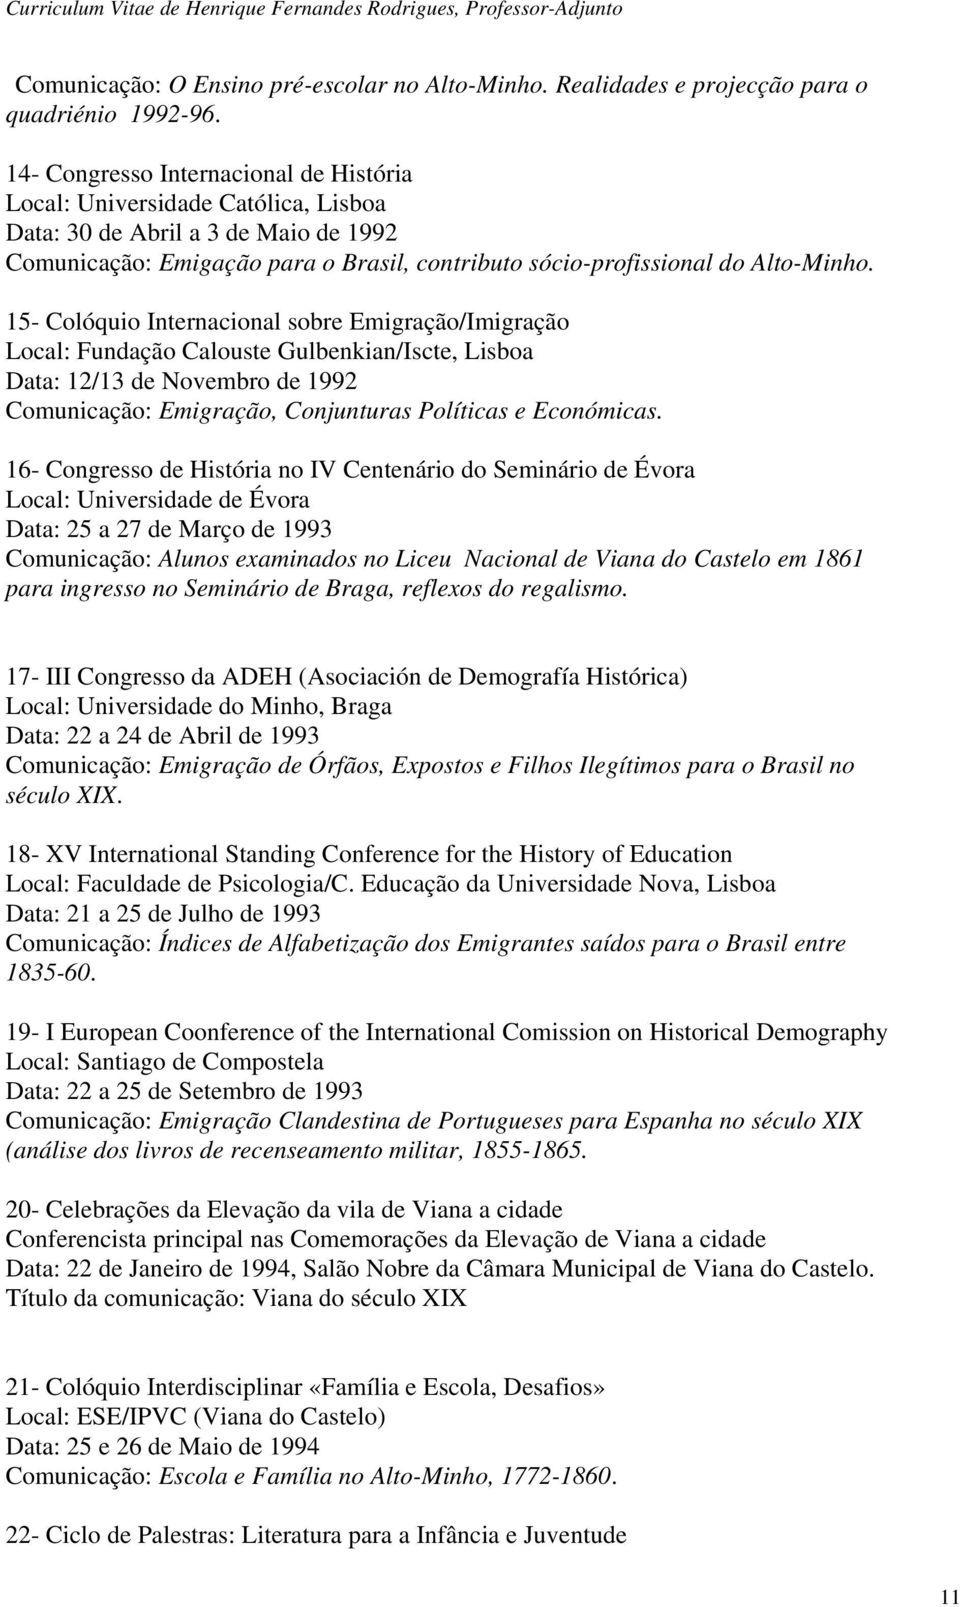 15- Colóquio Internacional sobre Emigração/Imigração Local: Fundação Calouste Gulbenkian/Iscte, Lisboa Data: 12/13 de Novembro de 1992 Comunicação: Emigração, Conjunturas Políticas e Económicas.